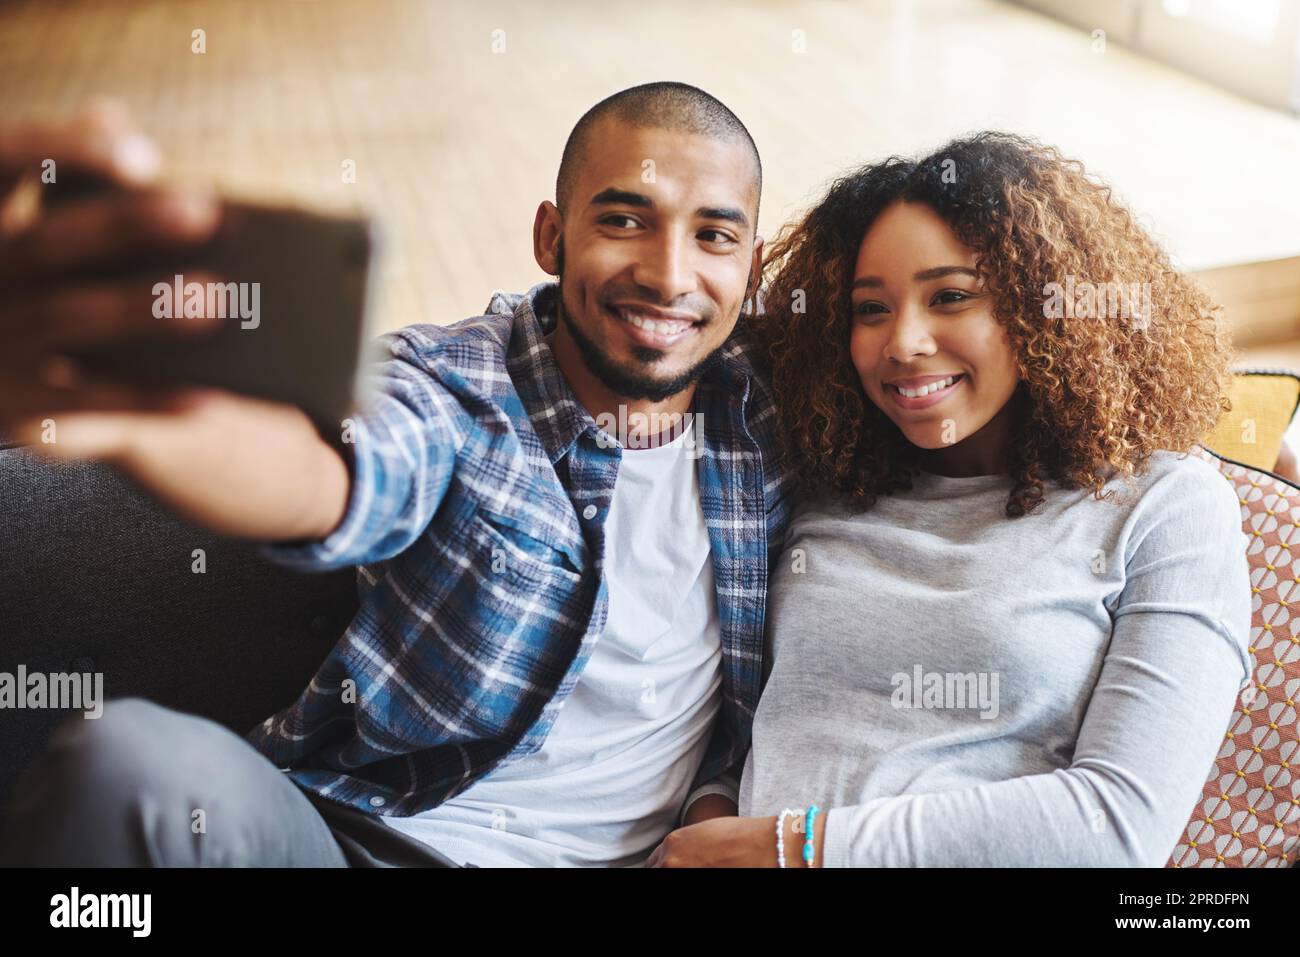 Sorridi babe. Coppia felice, romantica e innamorata che fa un selfie insieme al telefono seduto sul divano. I giovani sposi sorridenti si abbracciano mentre si tengono il telefono per scattare una foto in salotto. Foto Stock